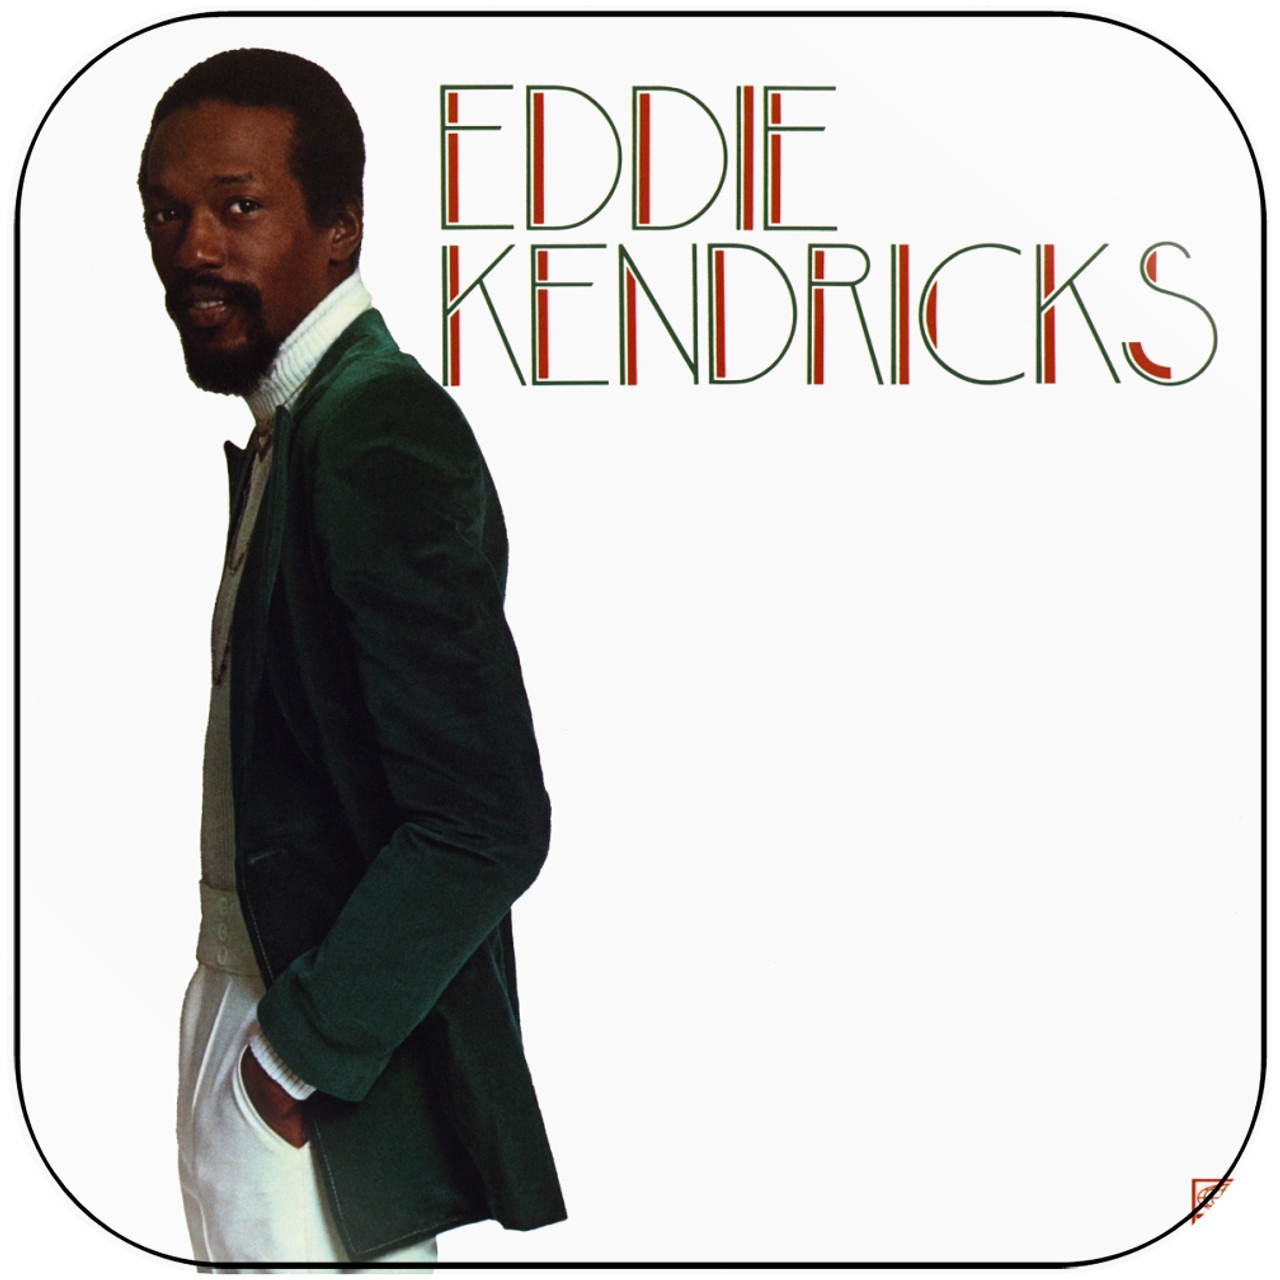 Eddie Kendricks - Eddie Kendricks Album Cover Sticker